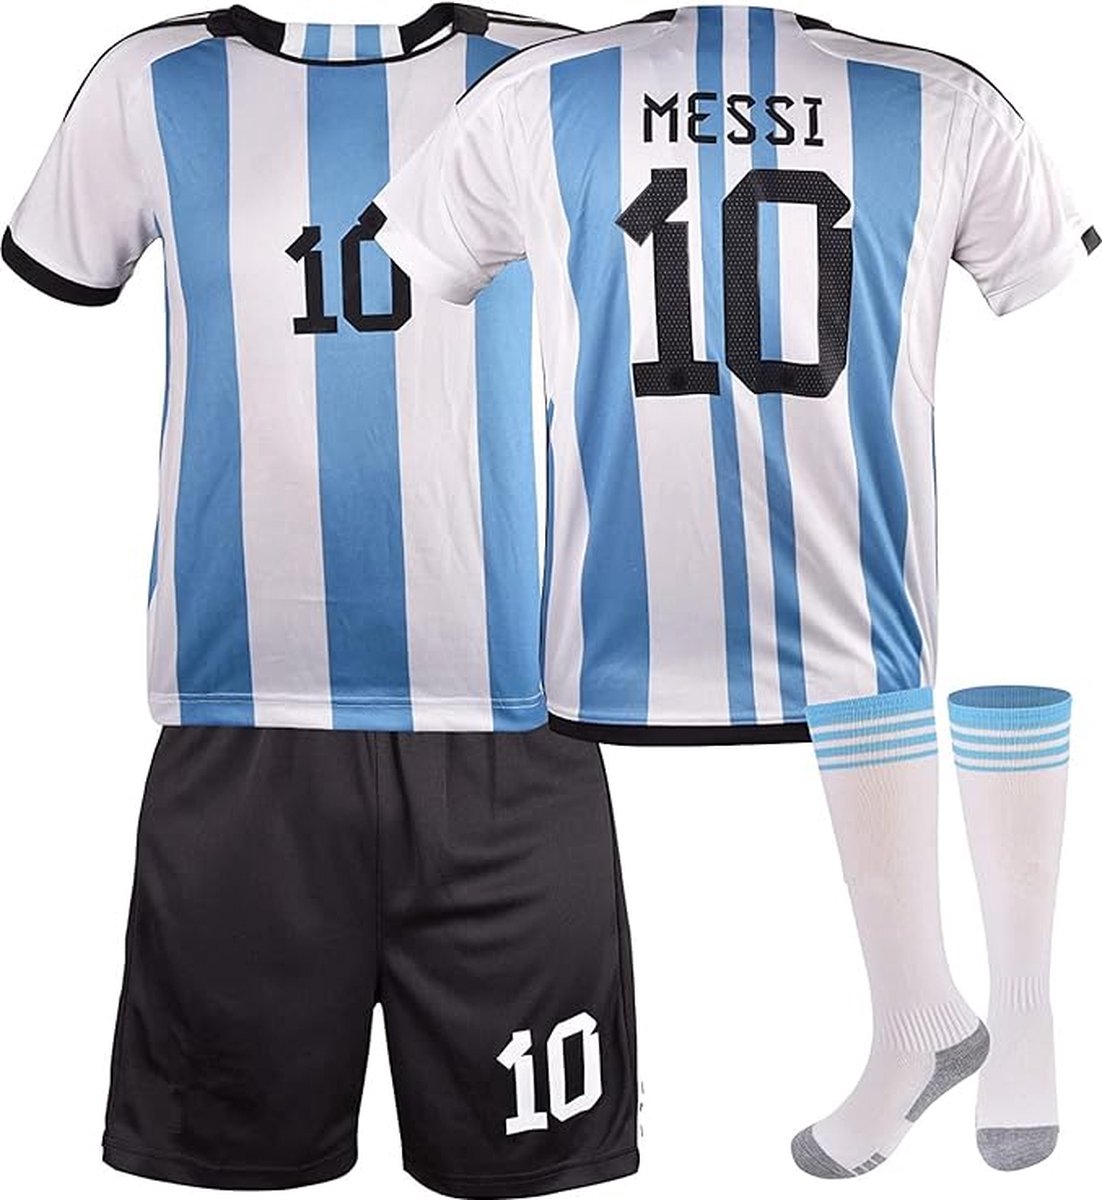 Argentinie Messi SET 4 Voetbalshirt & Broek - Voetbal sokken & Sleutelhanger GRATIS - Kinderen - Volwassen